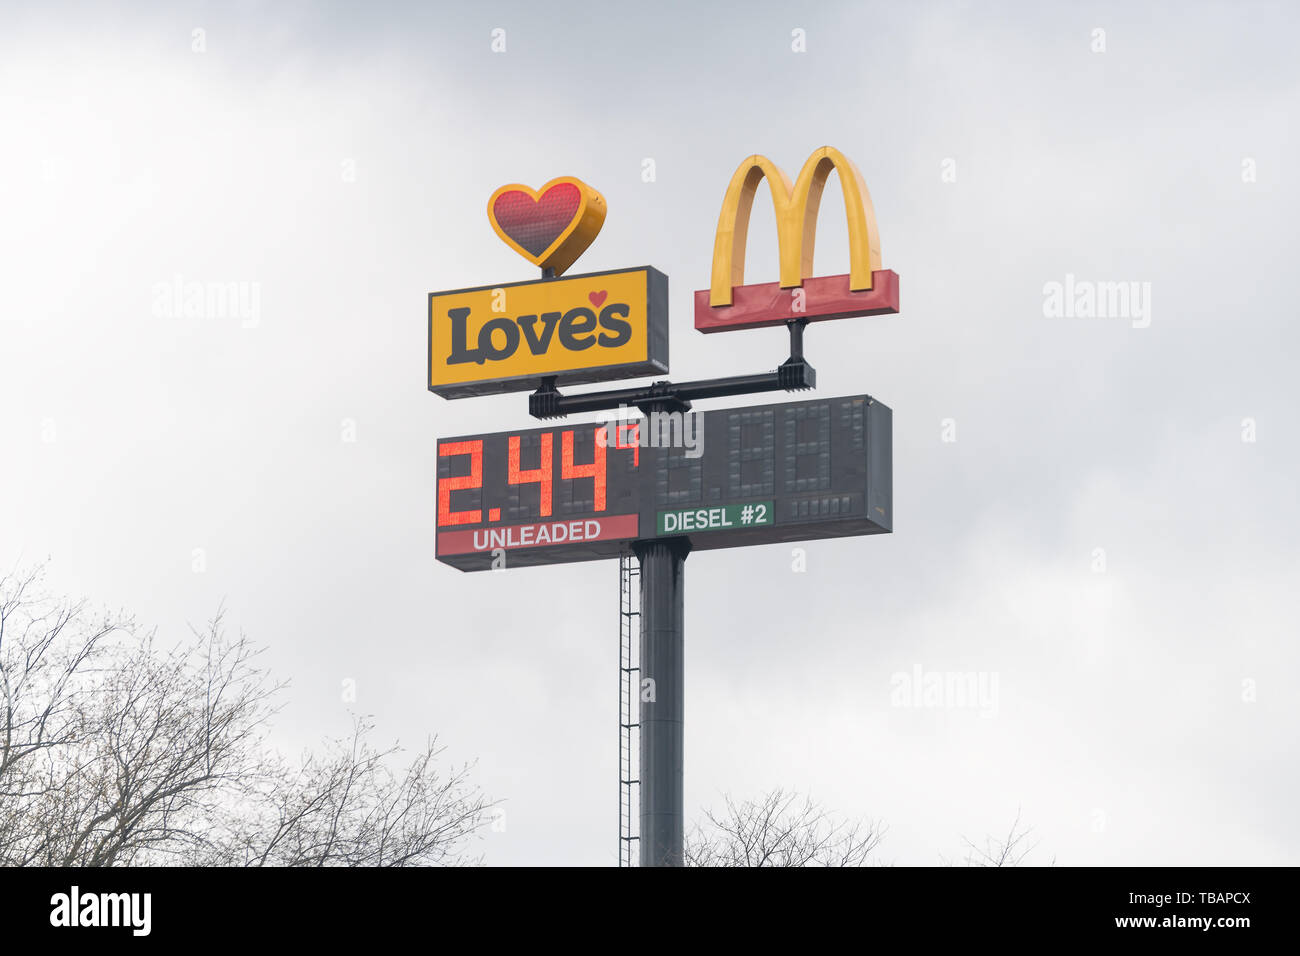 Meadowview, USA - Le 19 avril 2018 : rue de la route pendant la journée de l'amour libre avec la Petro-station avec écran lumière : et McDonald's restaurant fast food Banque D'Images